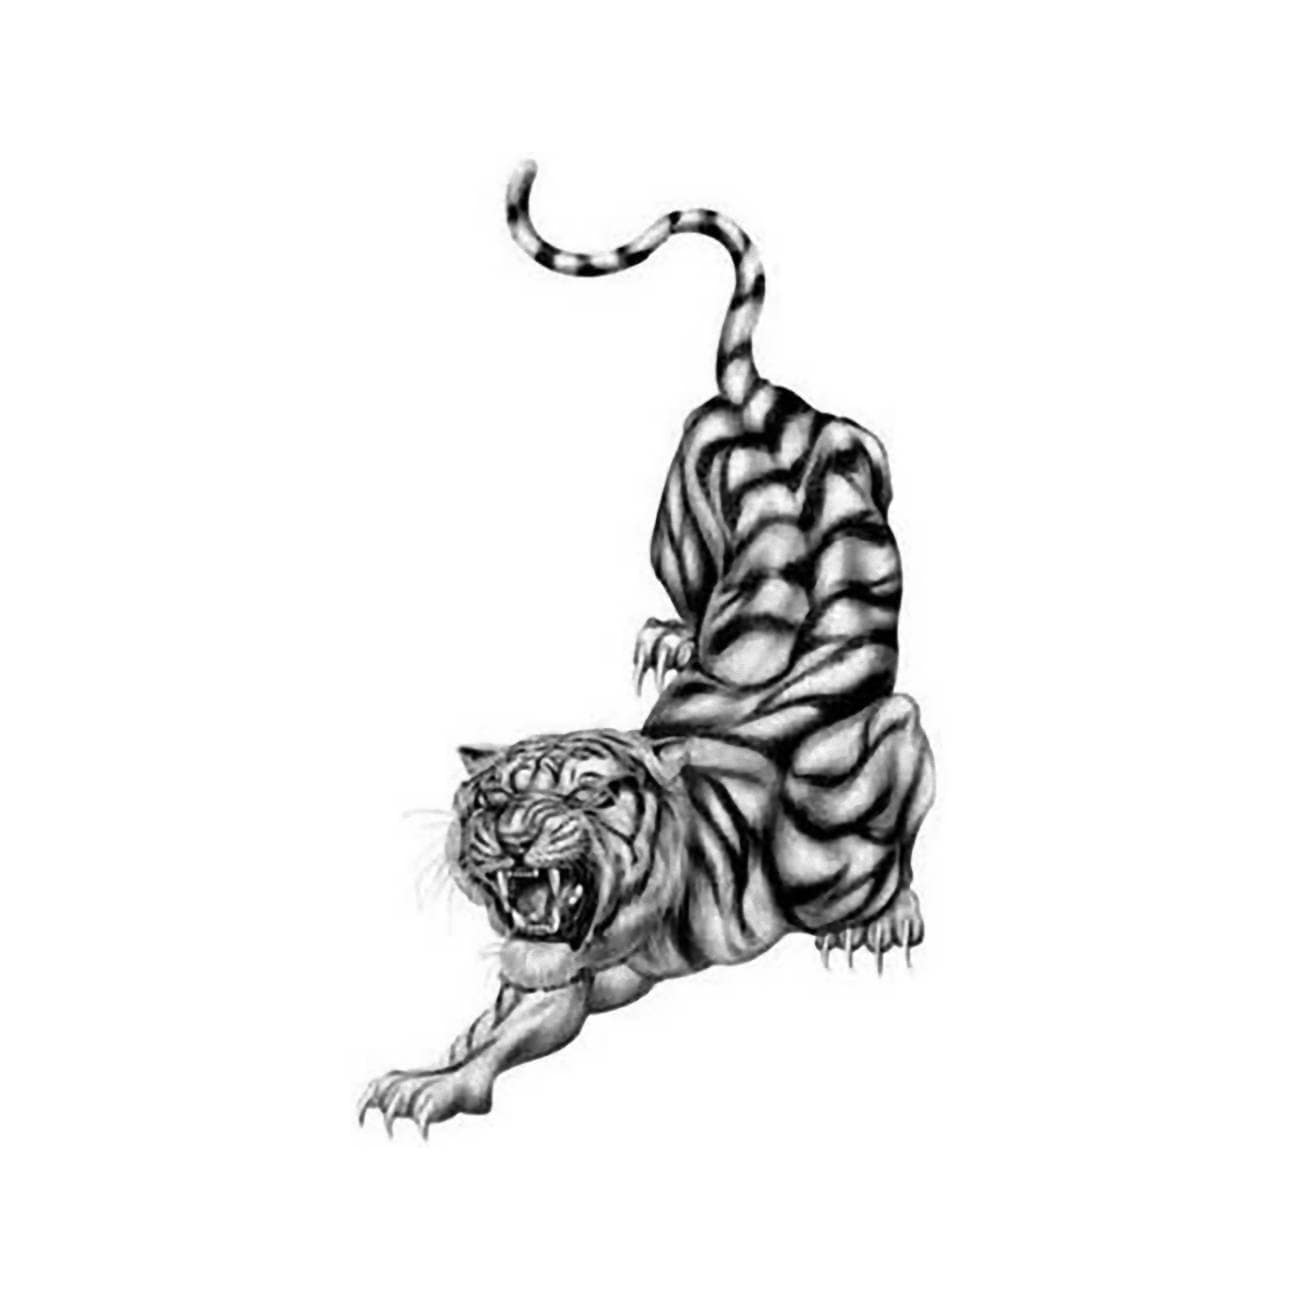 115 Fierce Tiger Tattoos Ideas  Meanings  Wild Tattoo Art